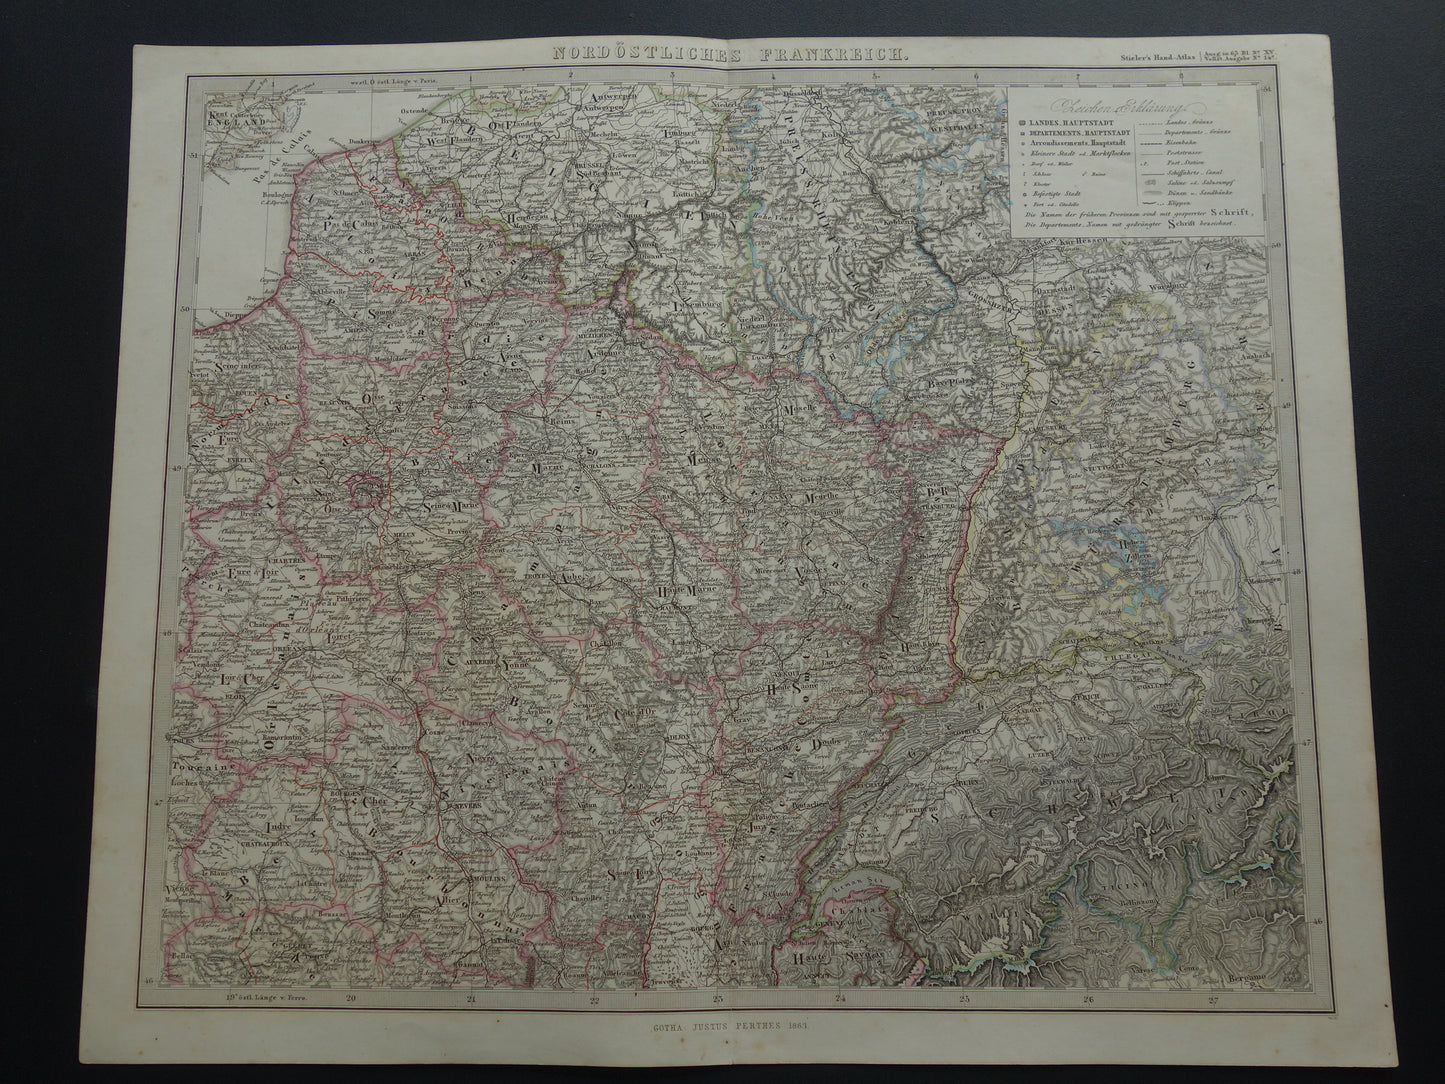 FRANKRIJK Grote oude kaart van Frankrijk 1863 originele antieke landkaart poster 74x89 cm met jaartal